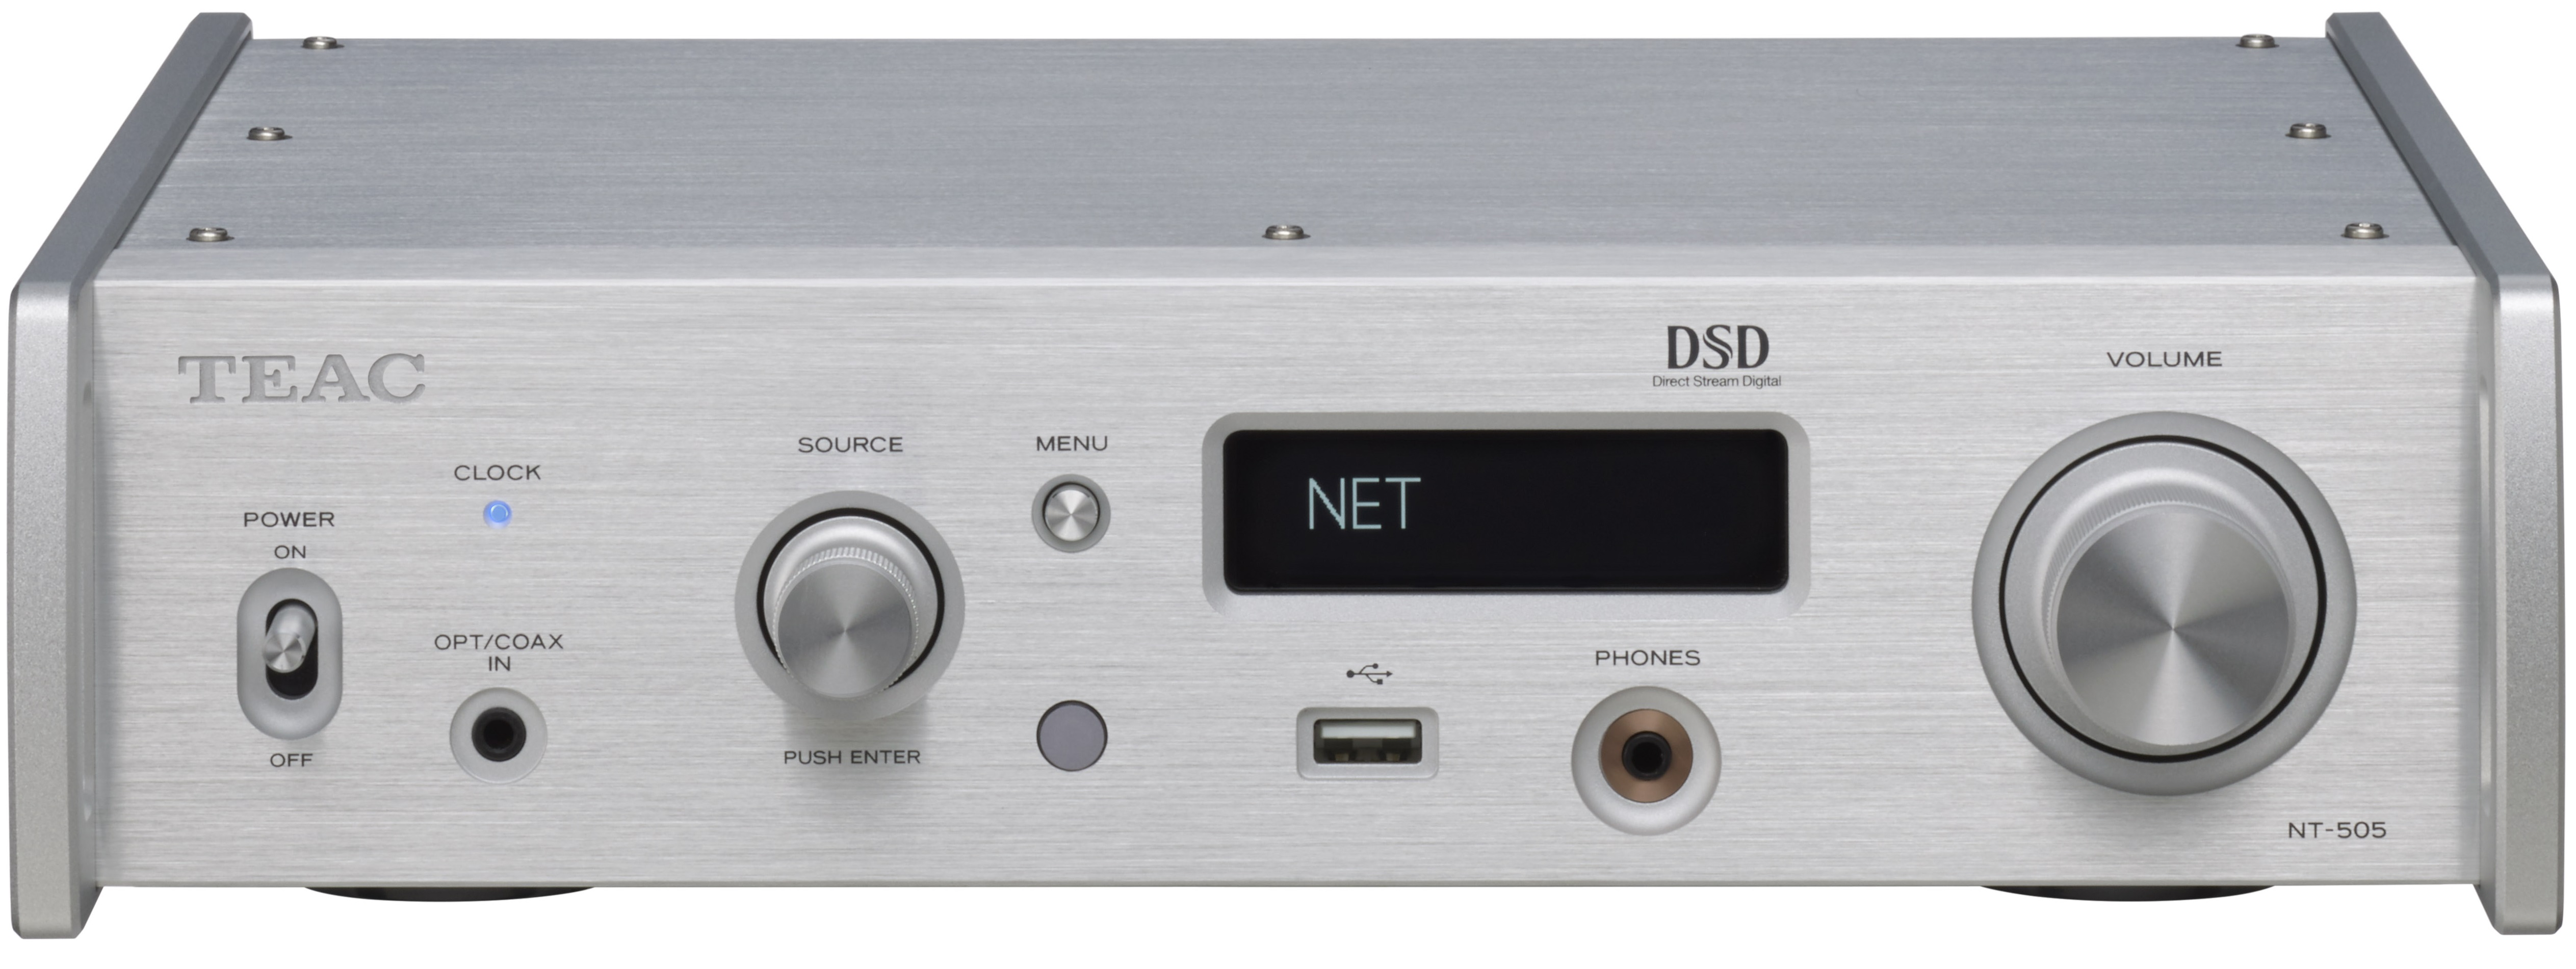 USB DAC/ネットワークプレーヤー『NT-505』を新発売